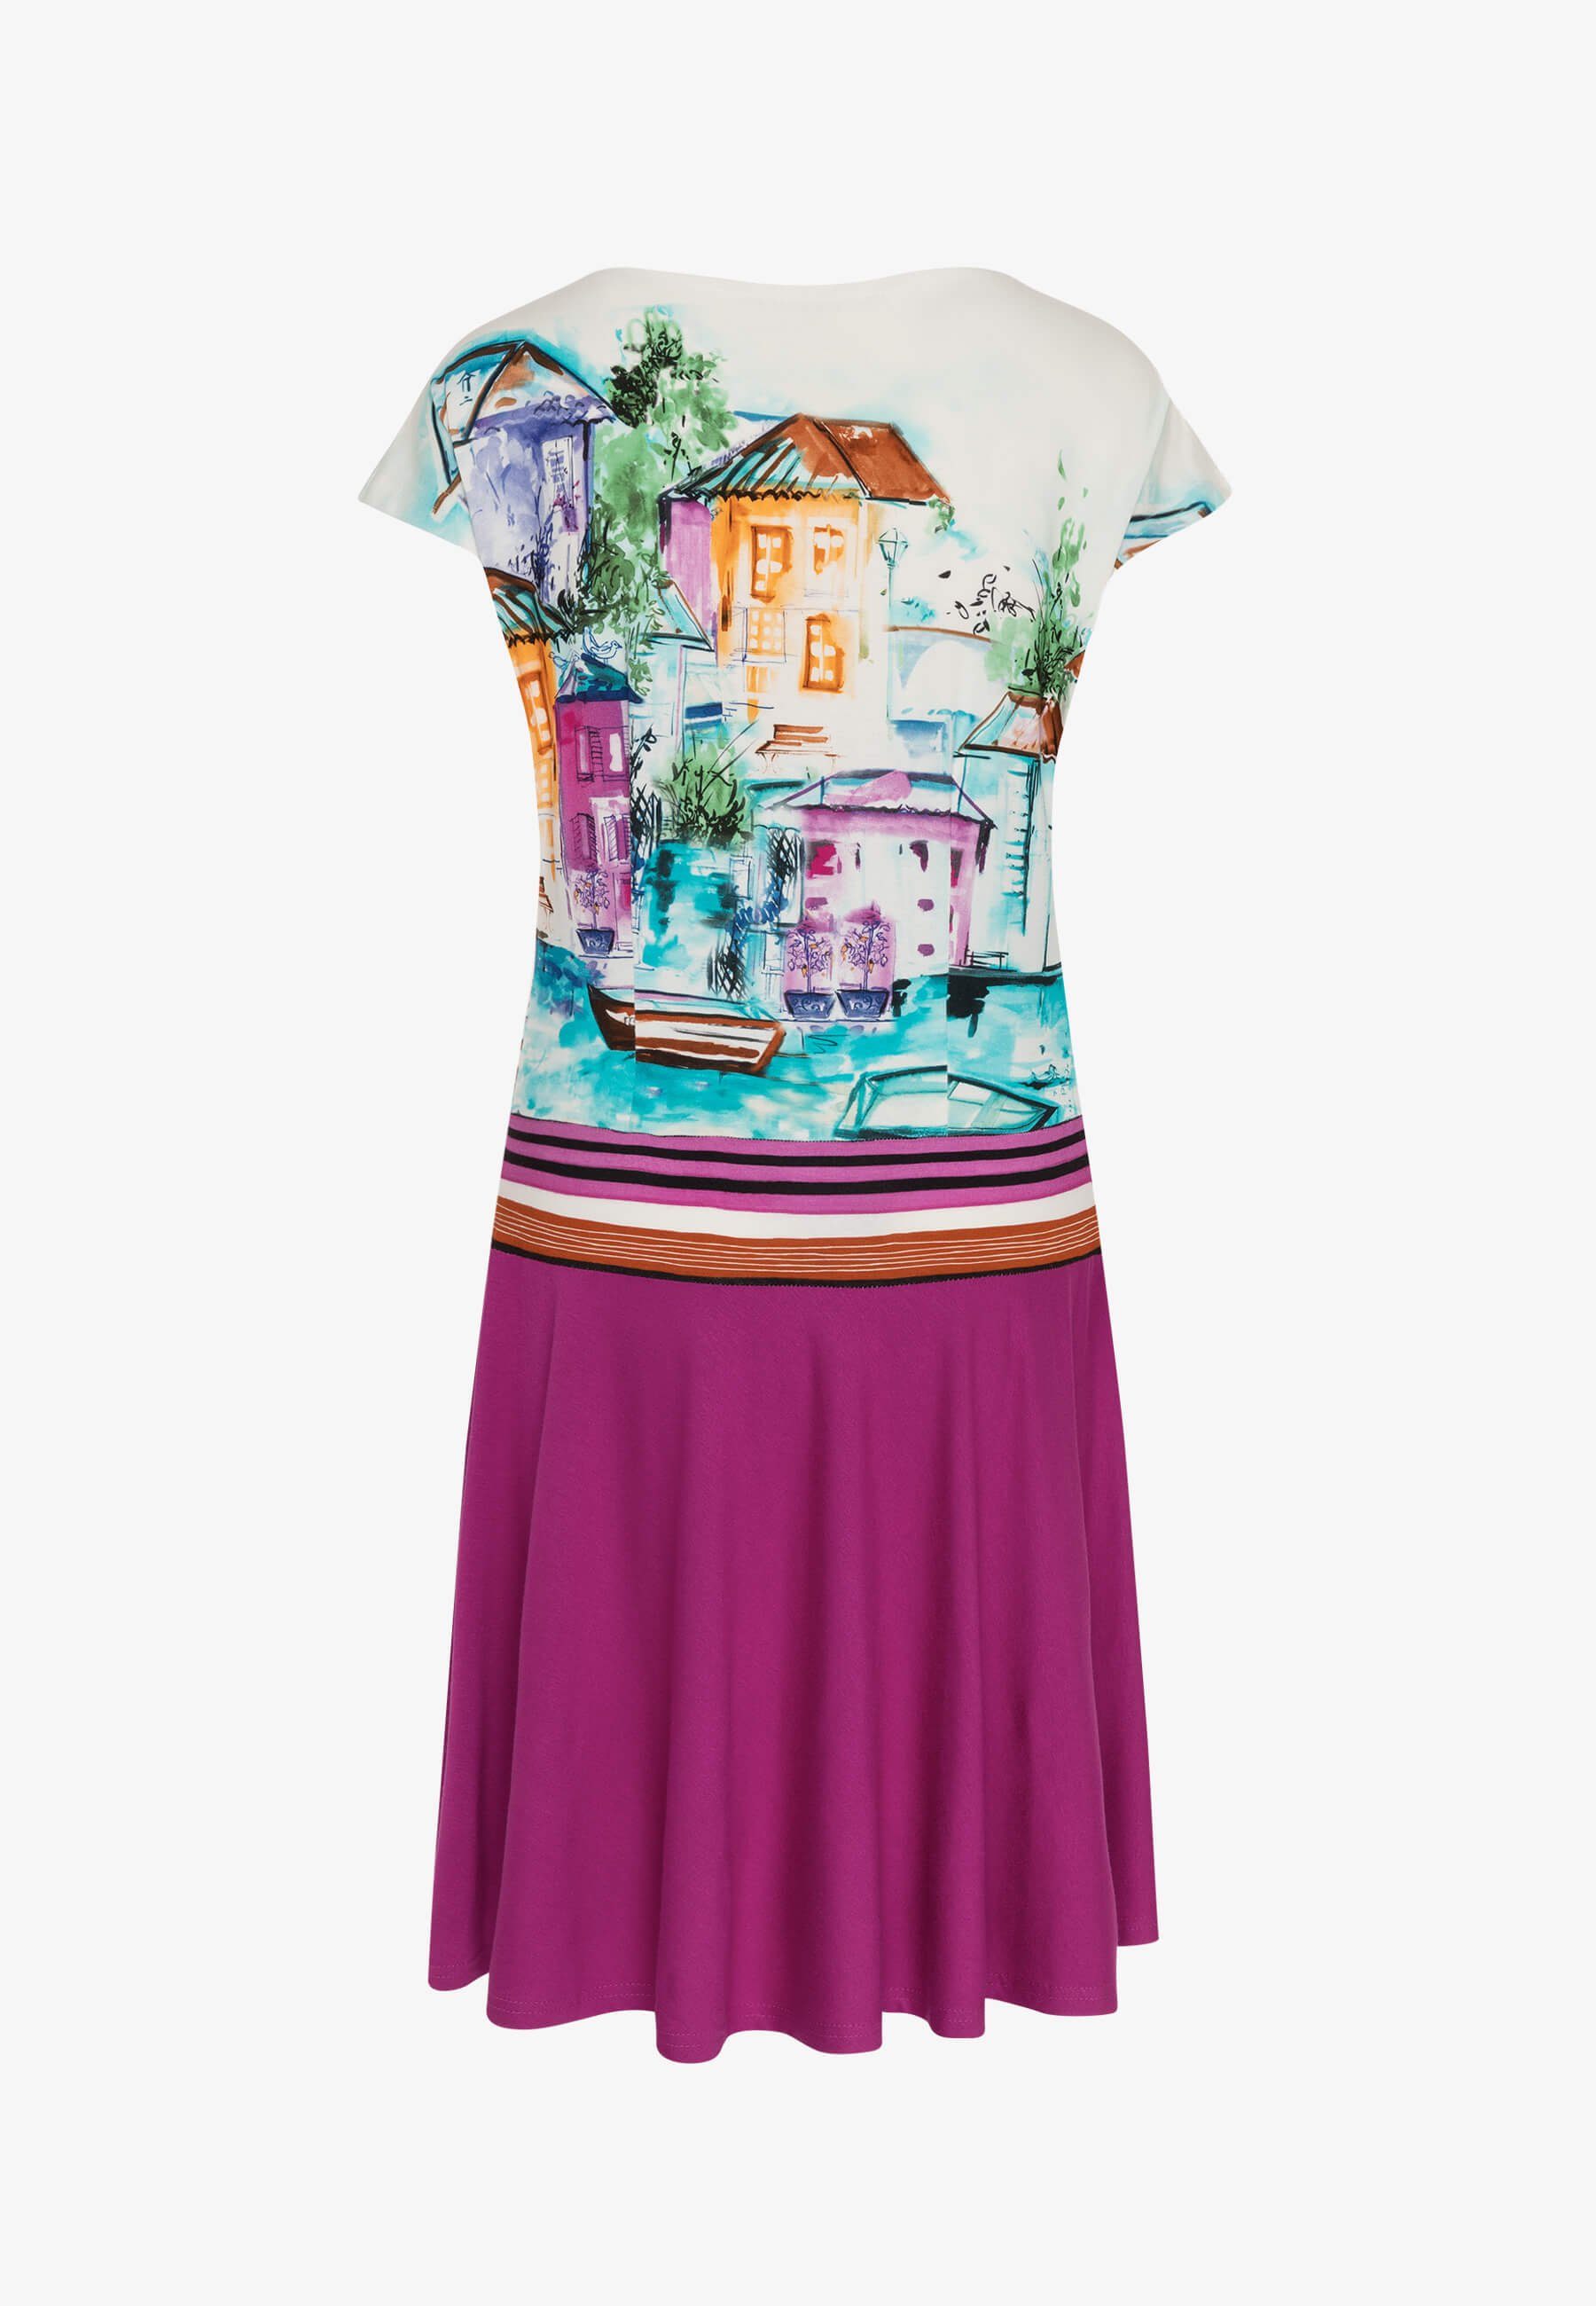 MODEE Sommerkleid mit Haus/Boote-Print Druck in leicht italienischer Optik Häuserprint Fuchsia farbenfrohen fallender femininer